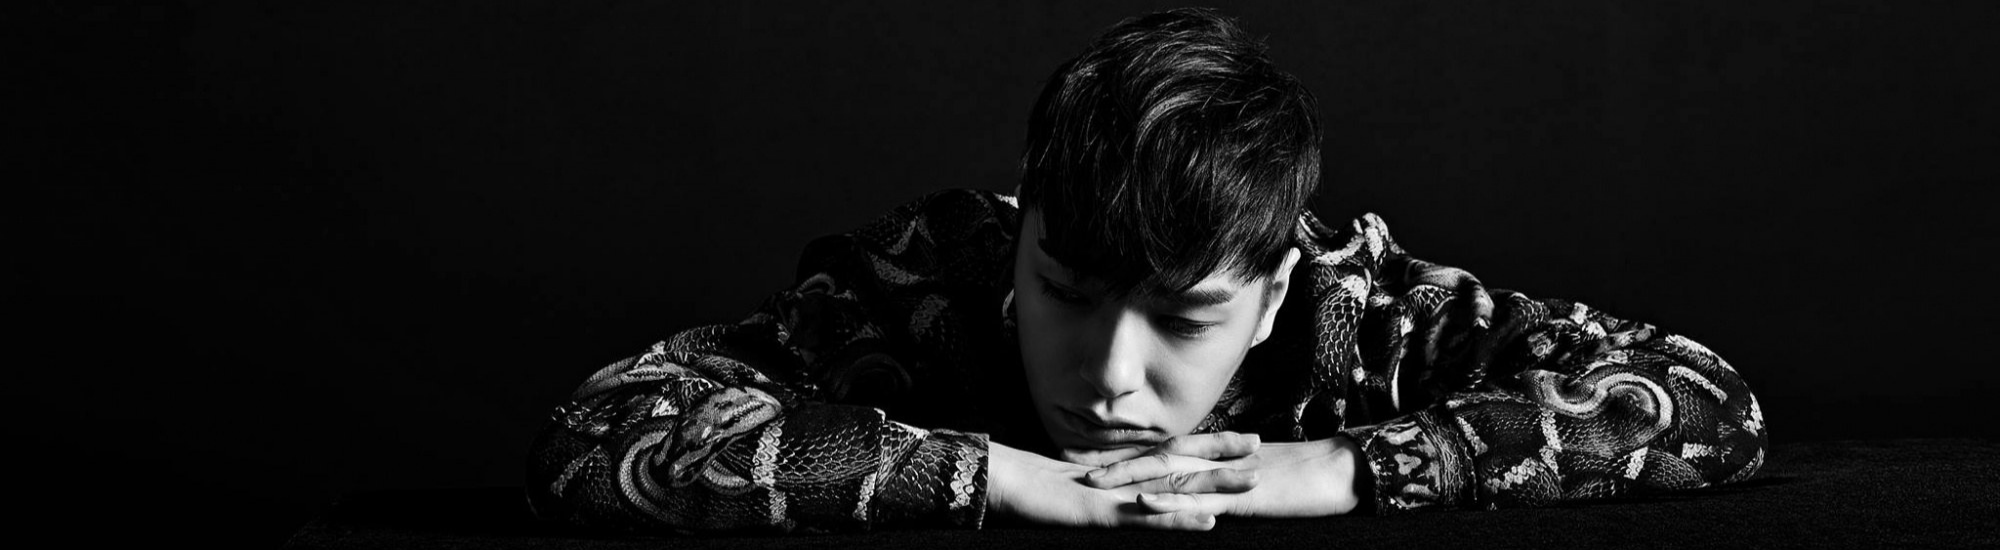 Jung Ki-seok, plus connu sous le nom de Simon Dominic, est un chanteur hip-hop sud-coréen.